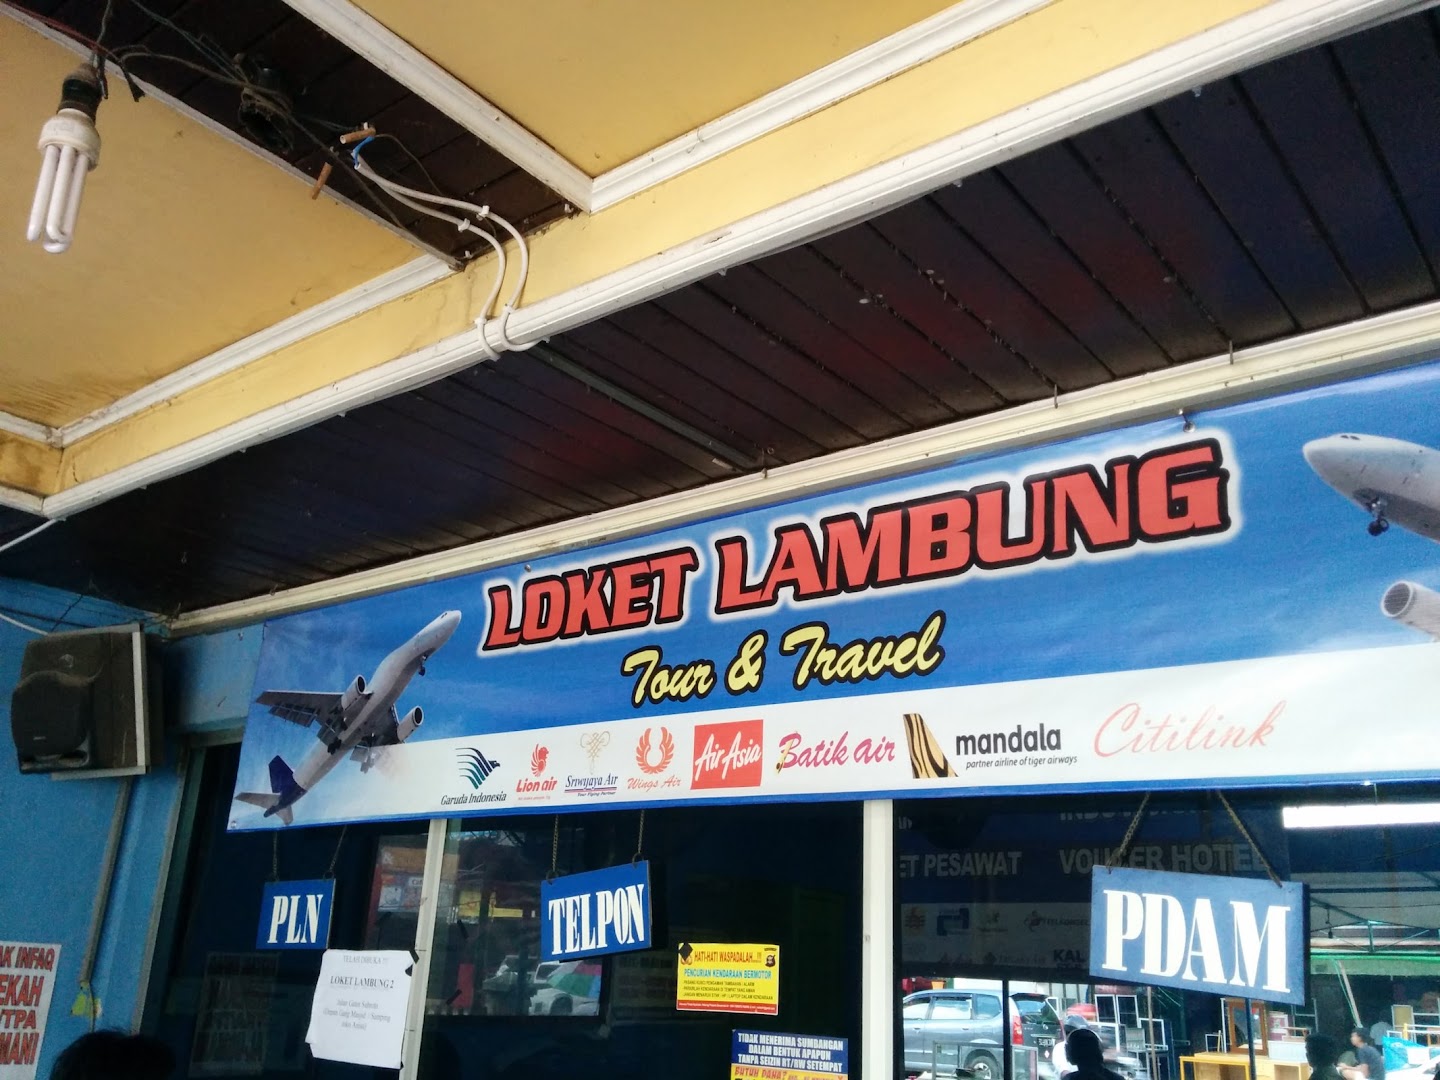 Loket Lambung Tours And Travel Photo